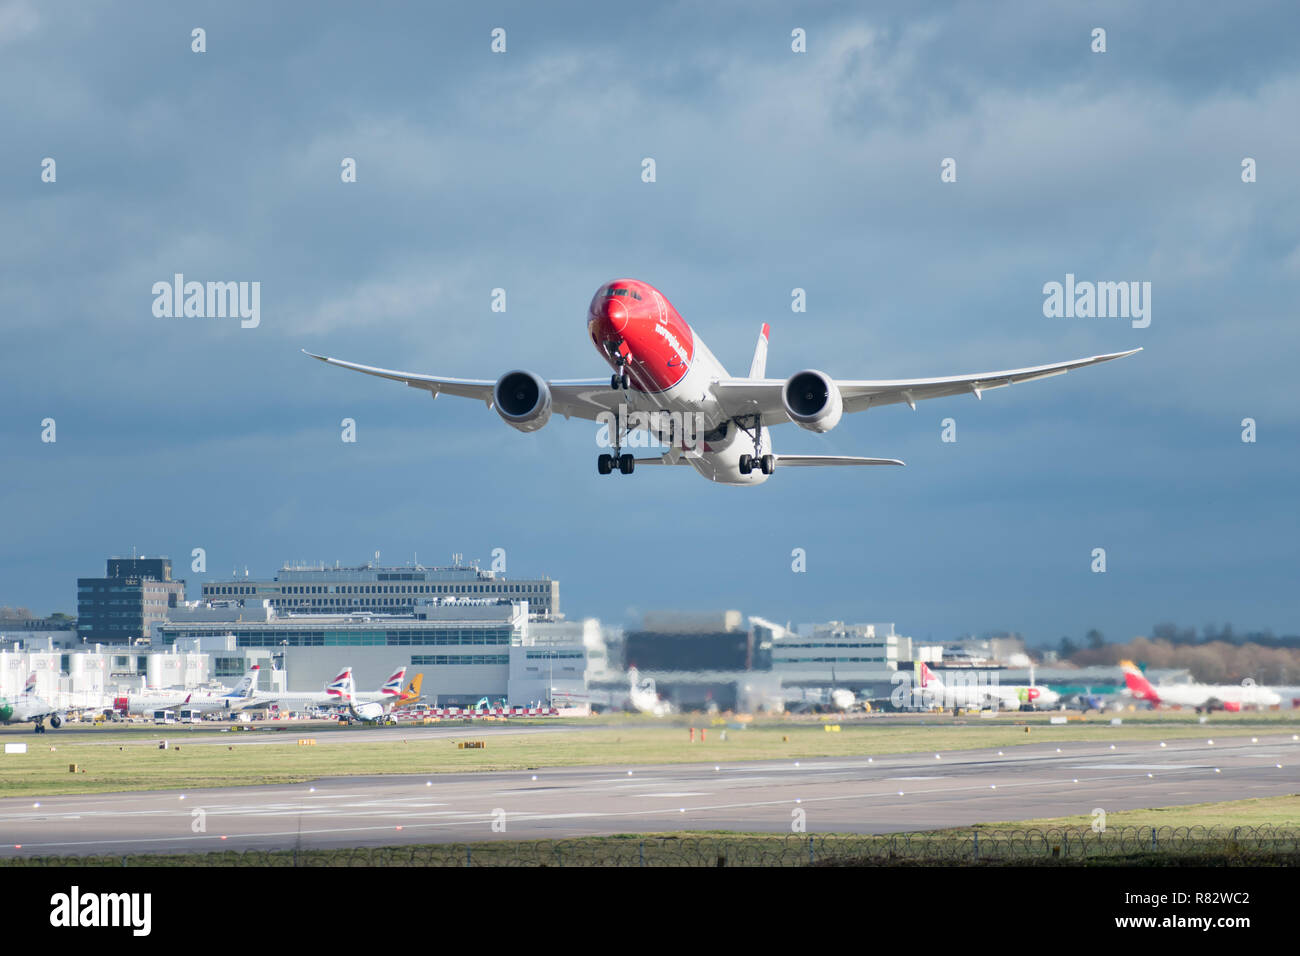 L'aéroport de Gatwick, England, UK - 09 décembre 2018 : un Norvégien Airlines avion décolle de l'aéroport de Londres Gatwick, avec lavage de la turbulence de sillage Banque D'Images